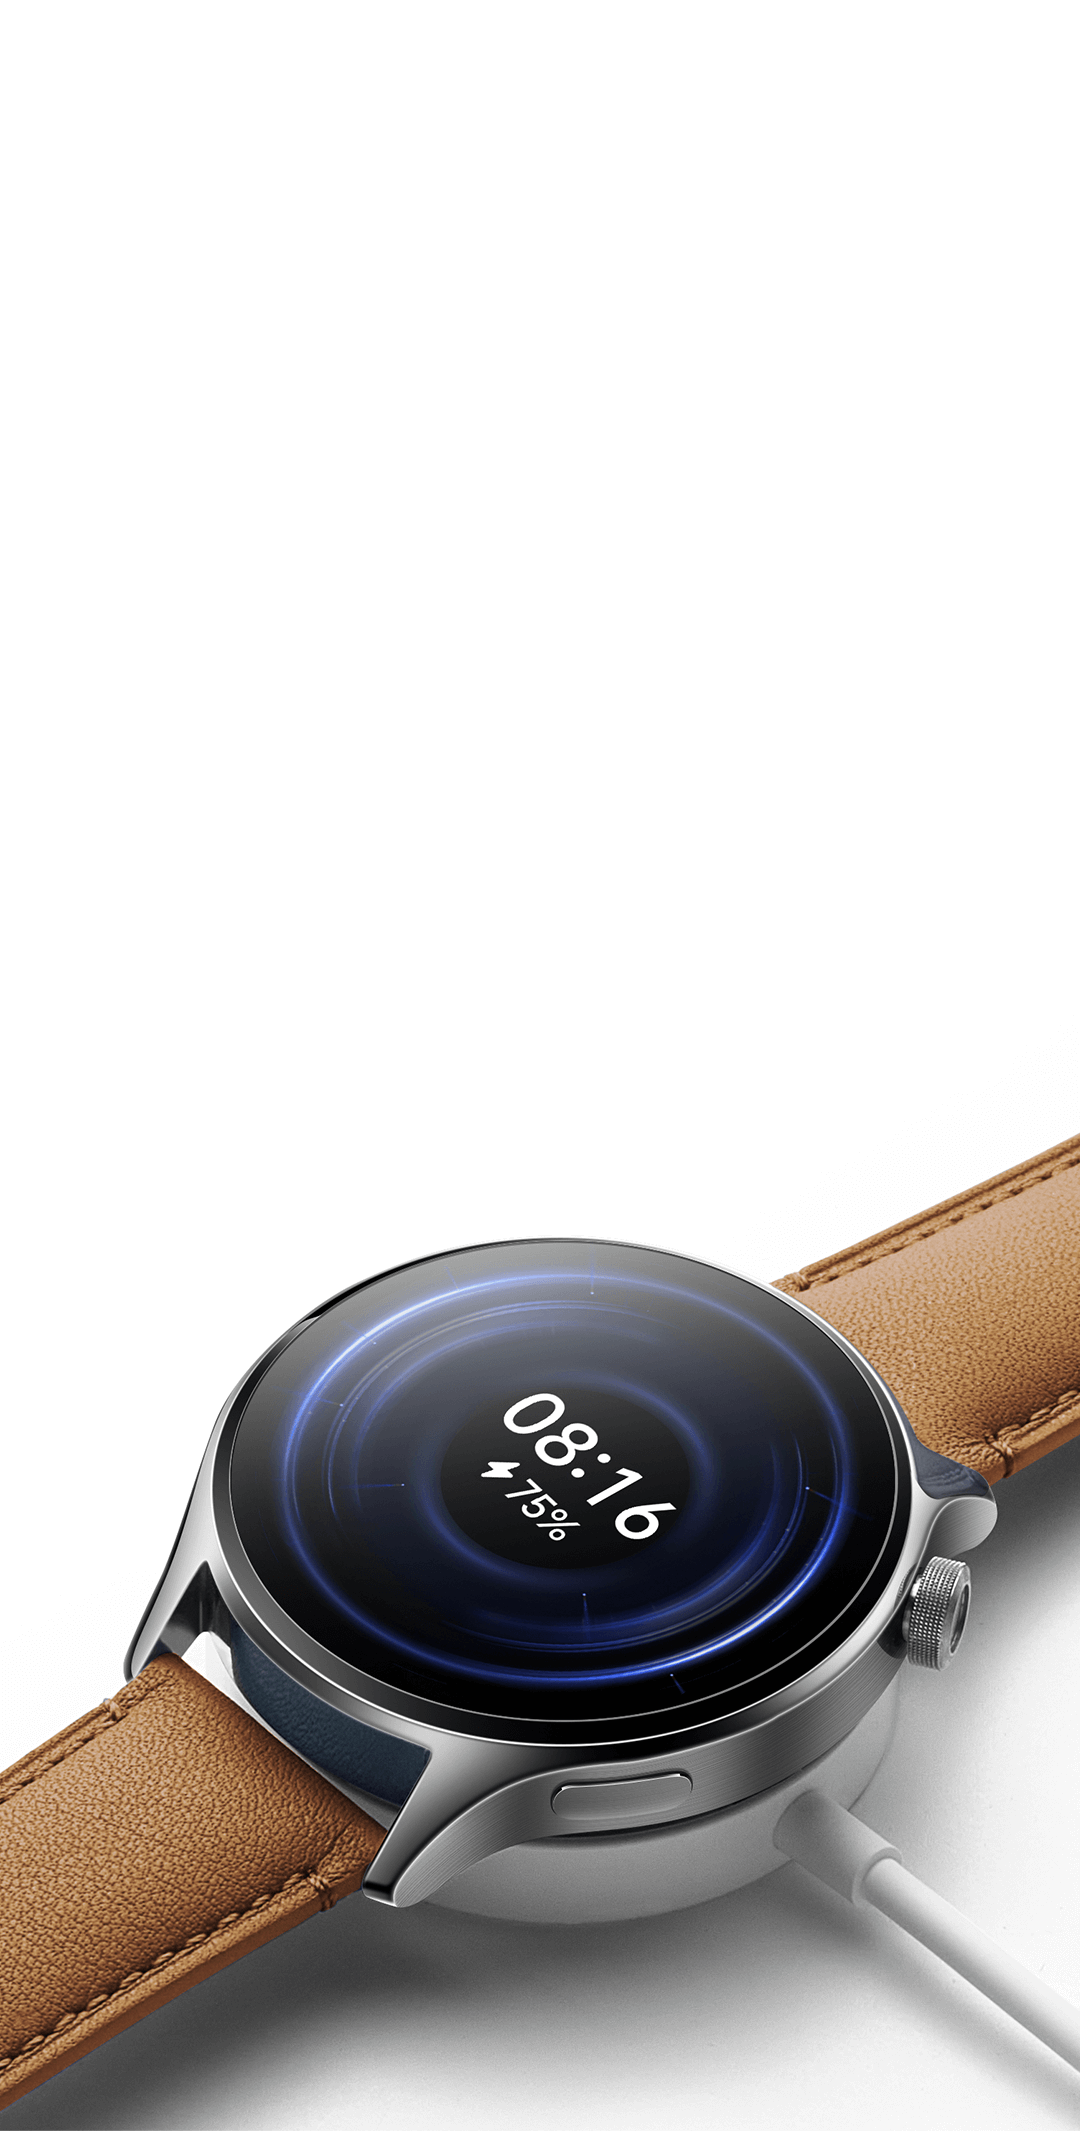 Xiaomi Watch S1 Pro características, precio, ficha técnica